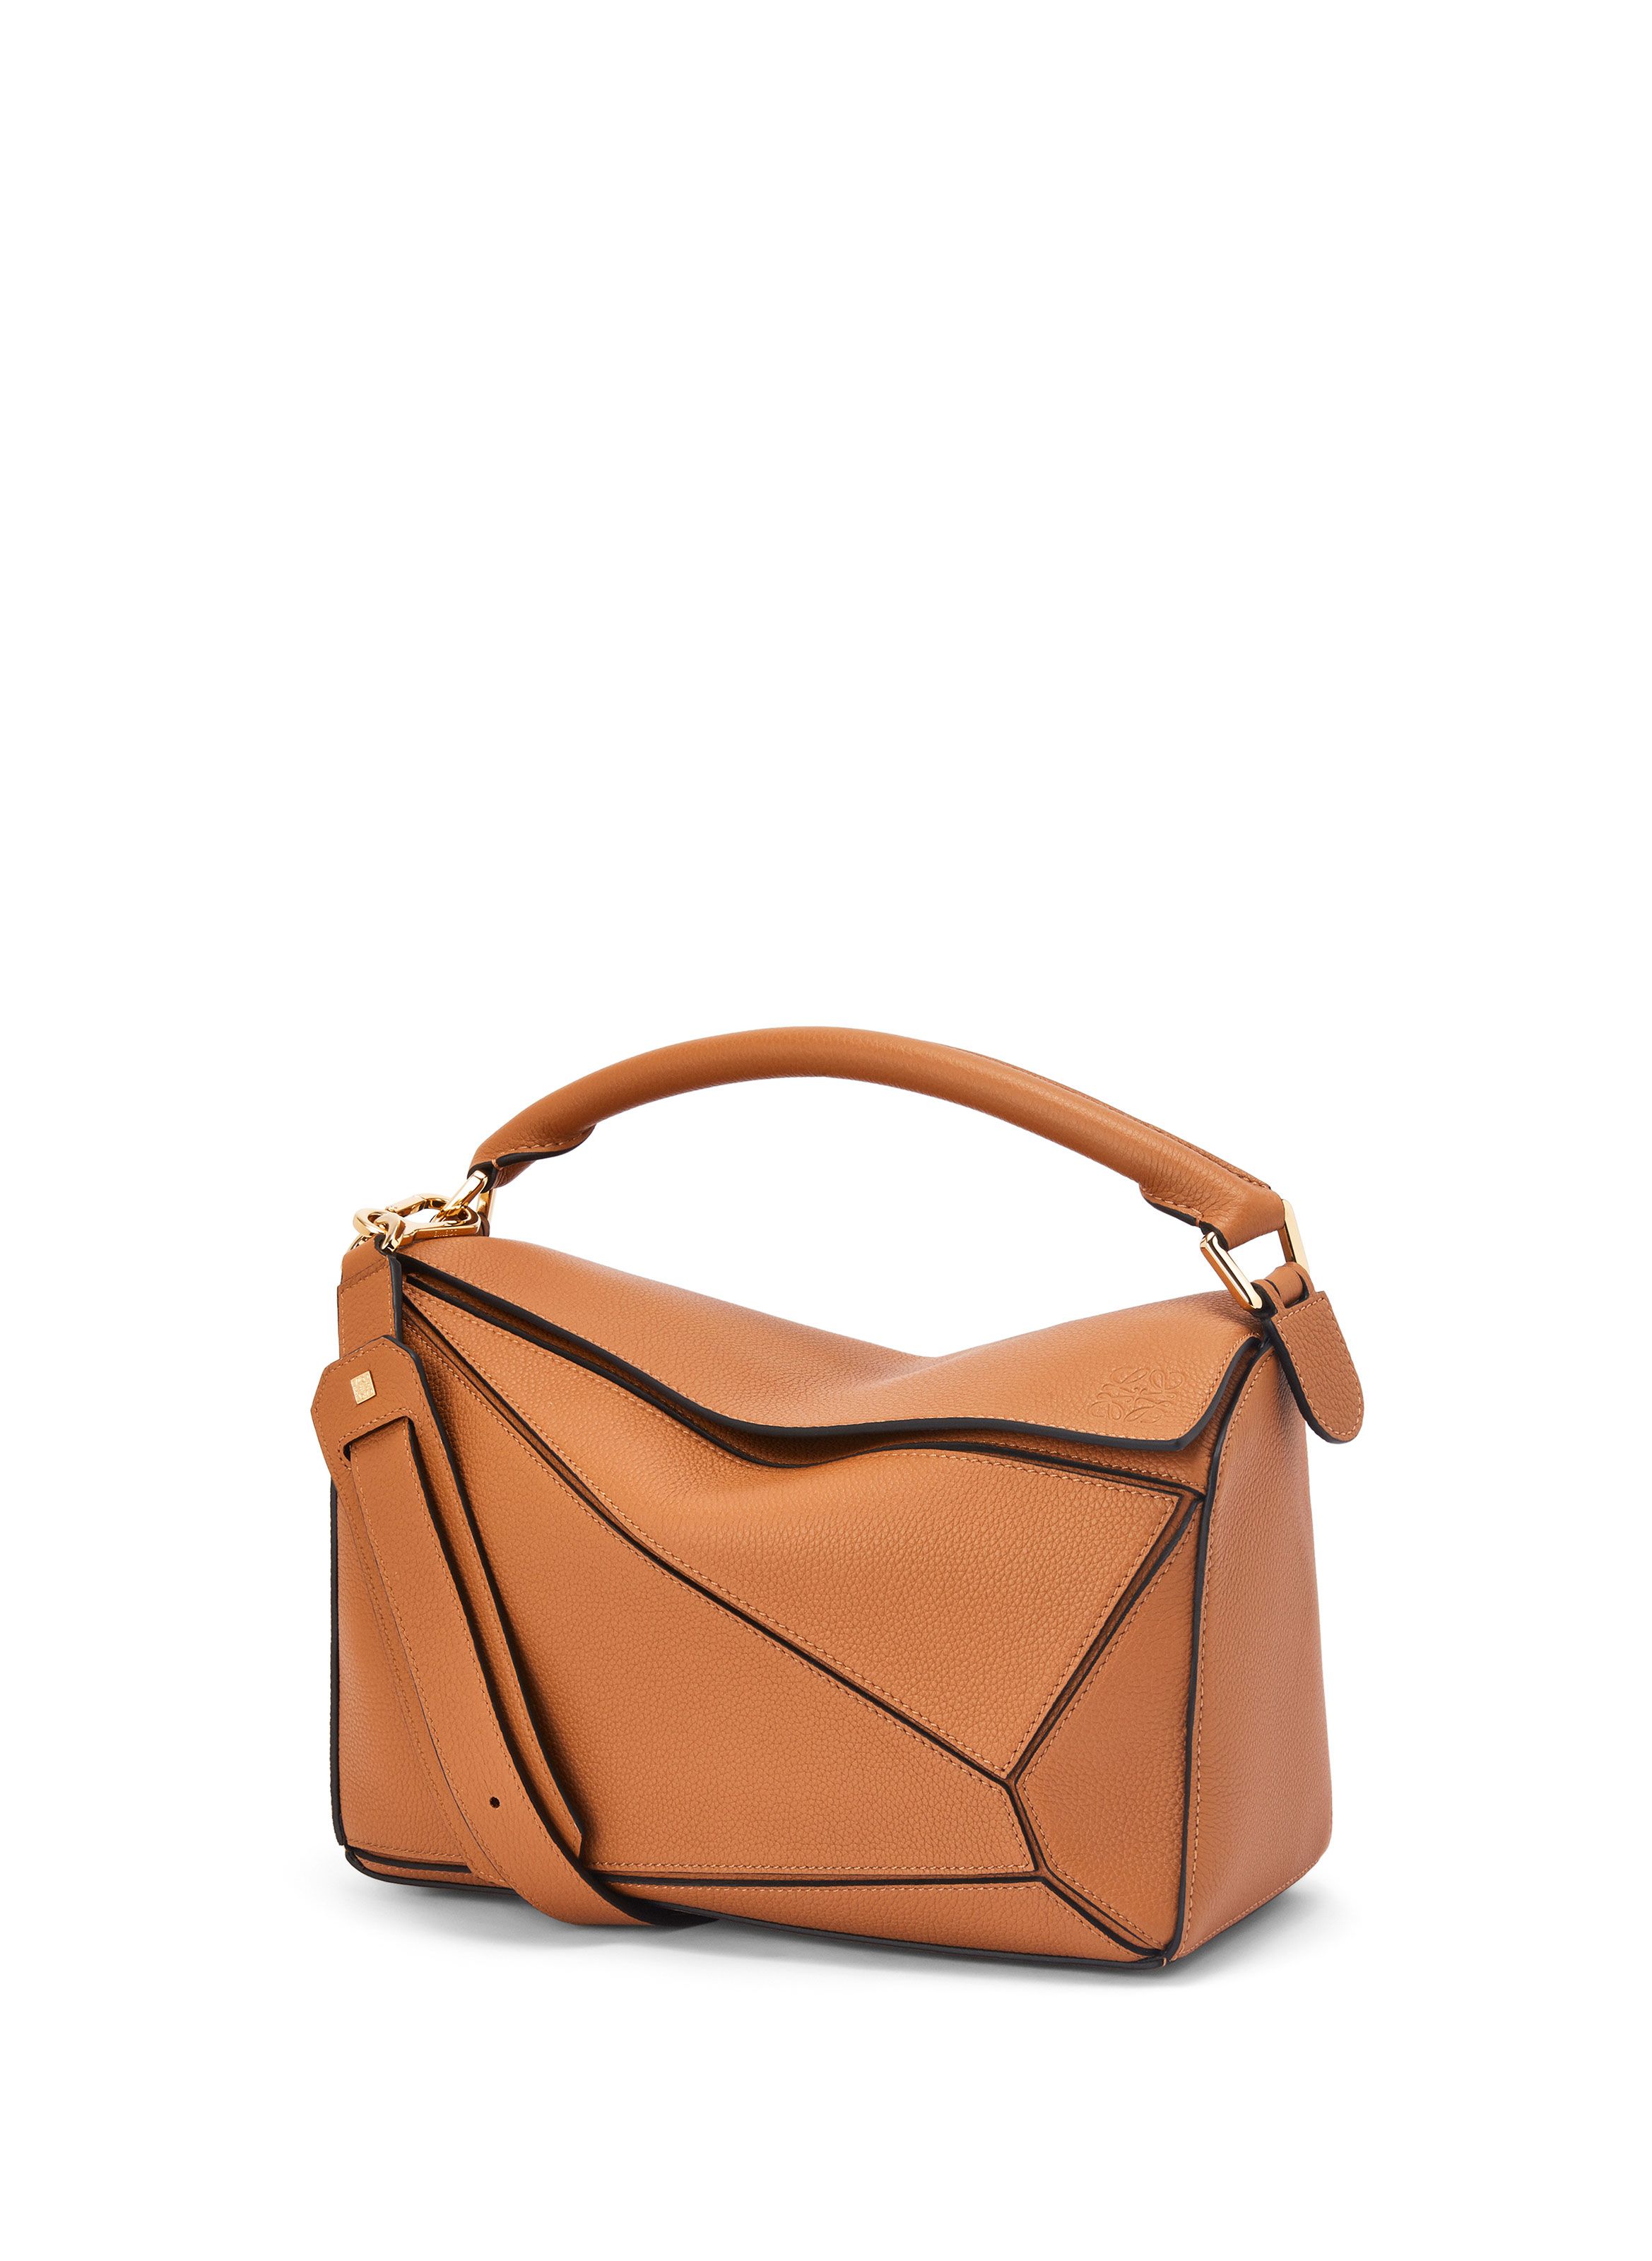 Bags LOEWE for WOMEN | printemps.com